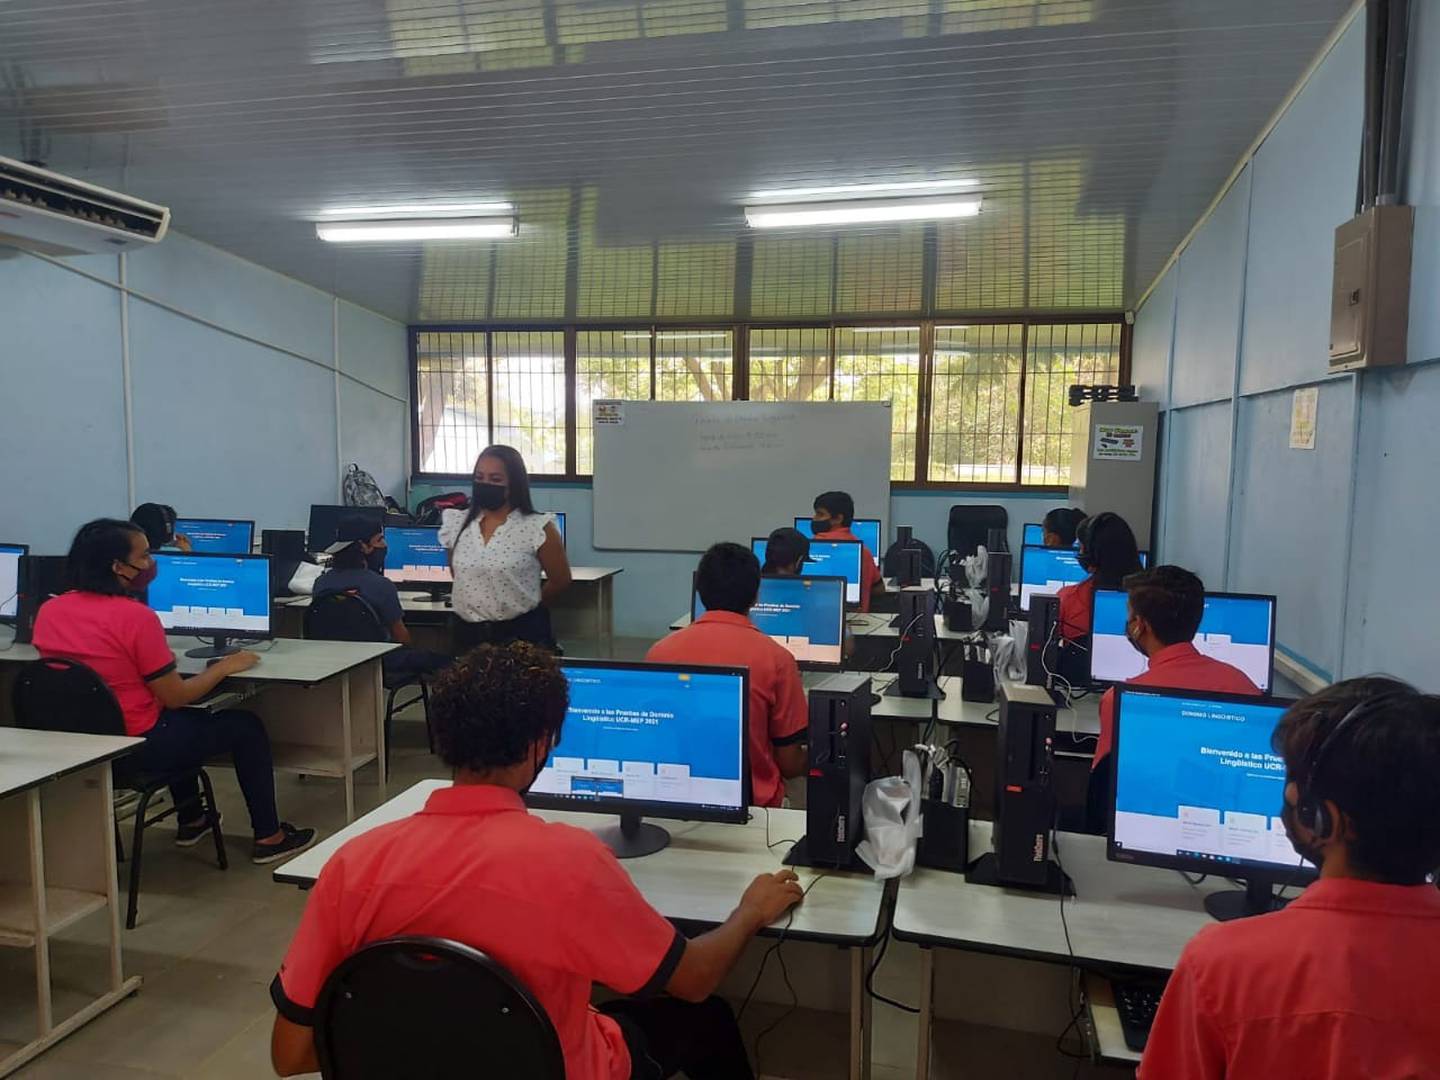 La Universidad de Costa Rica (UCR) confirma este martes 12 de diciembre que después de hacer 5.625 exámenes de inglés a estudiantes que realmente están llevando buen inglés en colegios técnicos y académicos, el resultado fue que tienen un nivel de inglés de principiantes